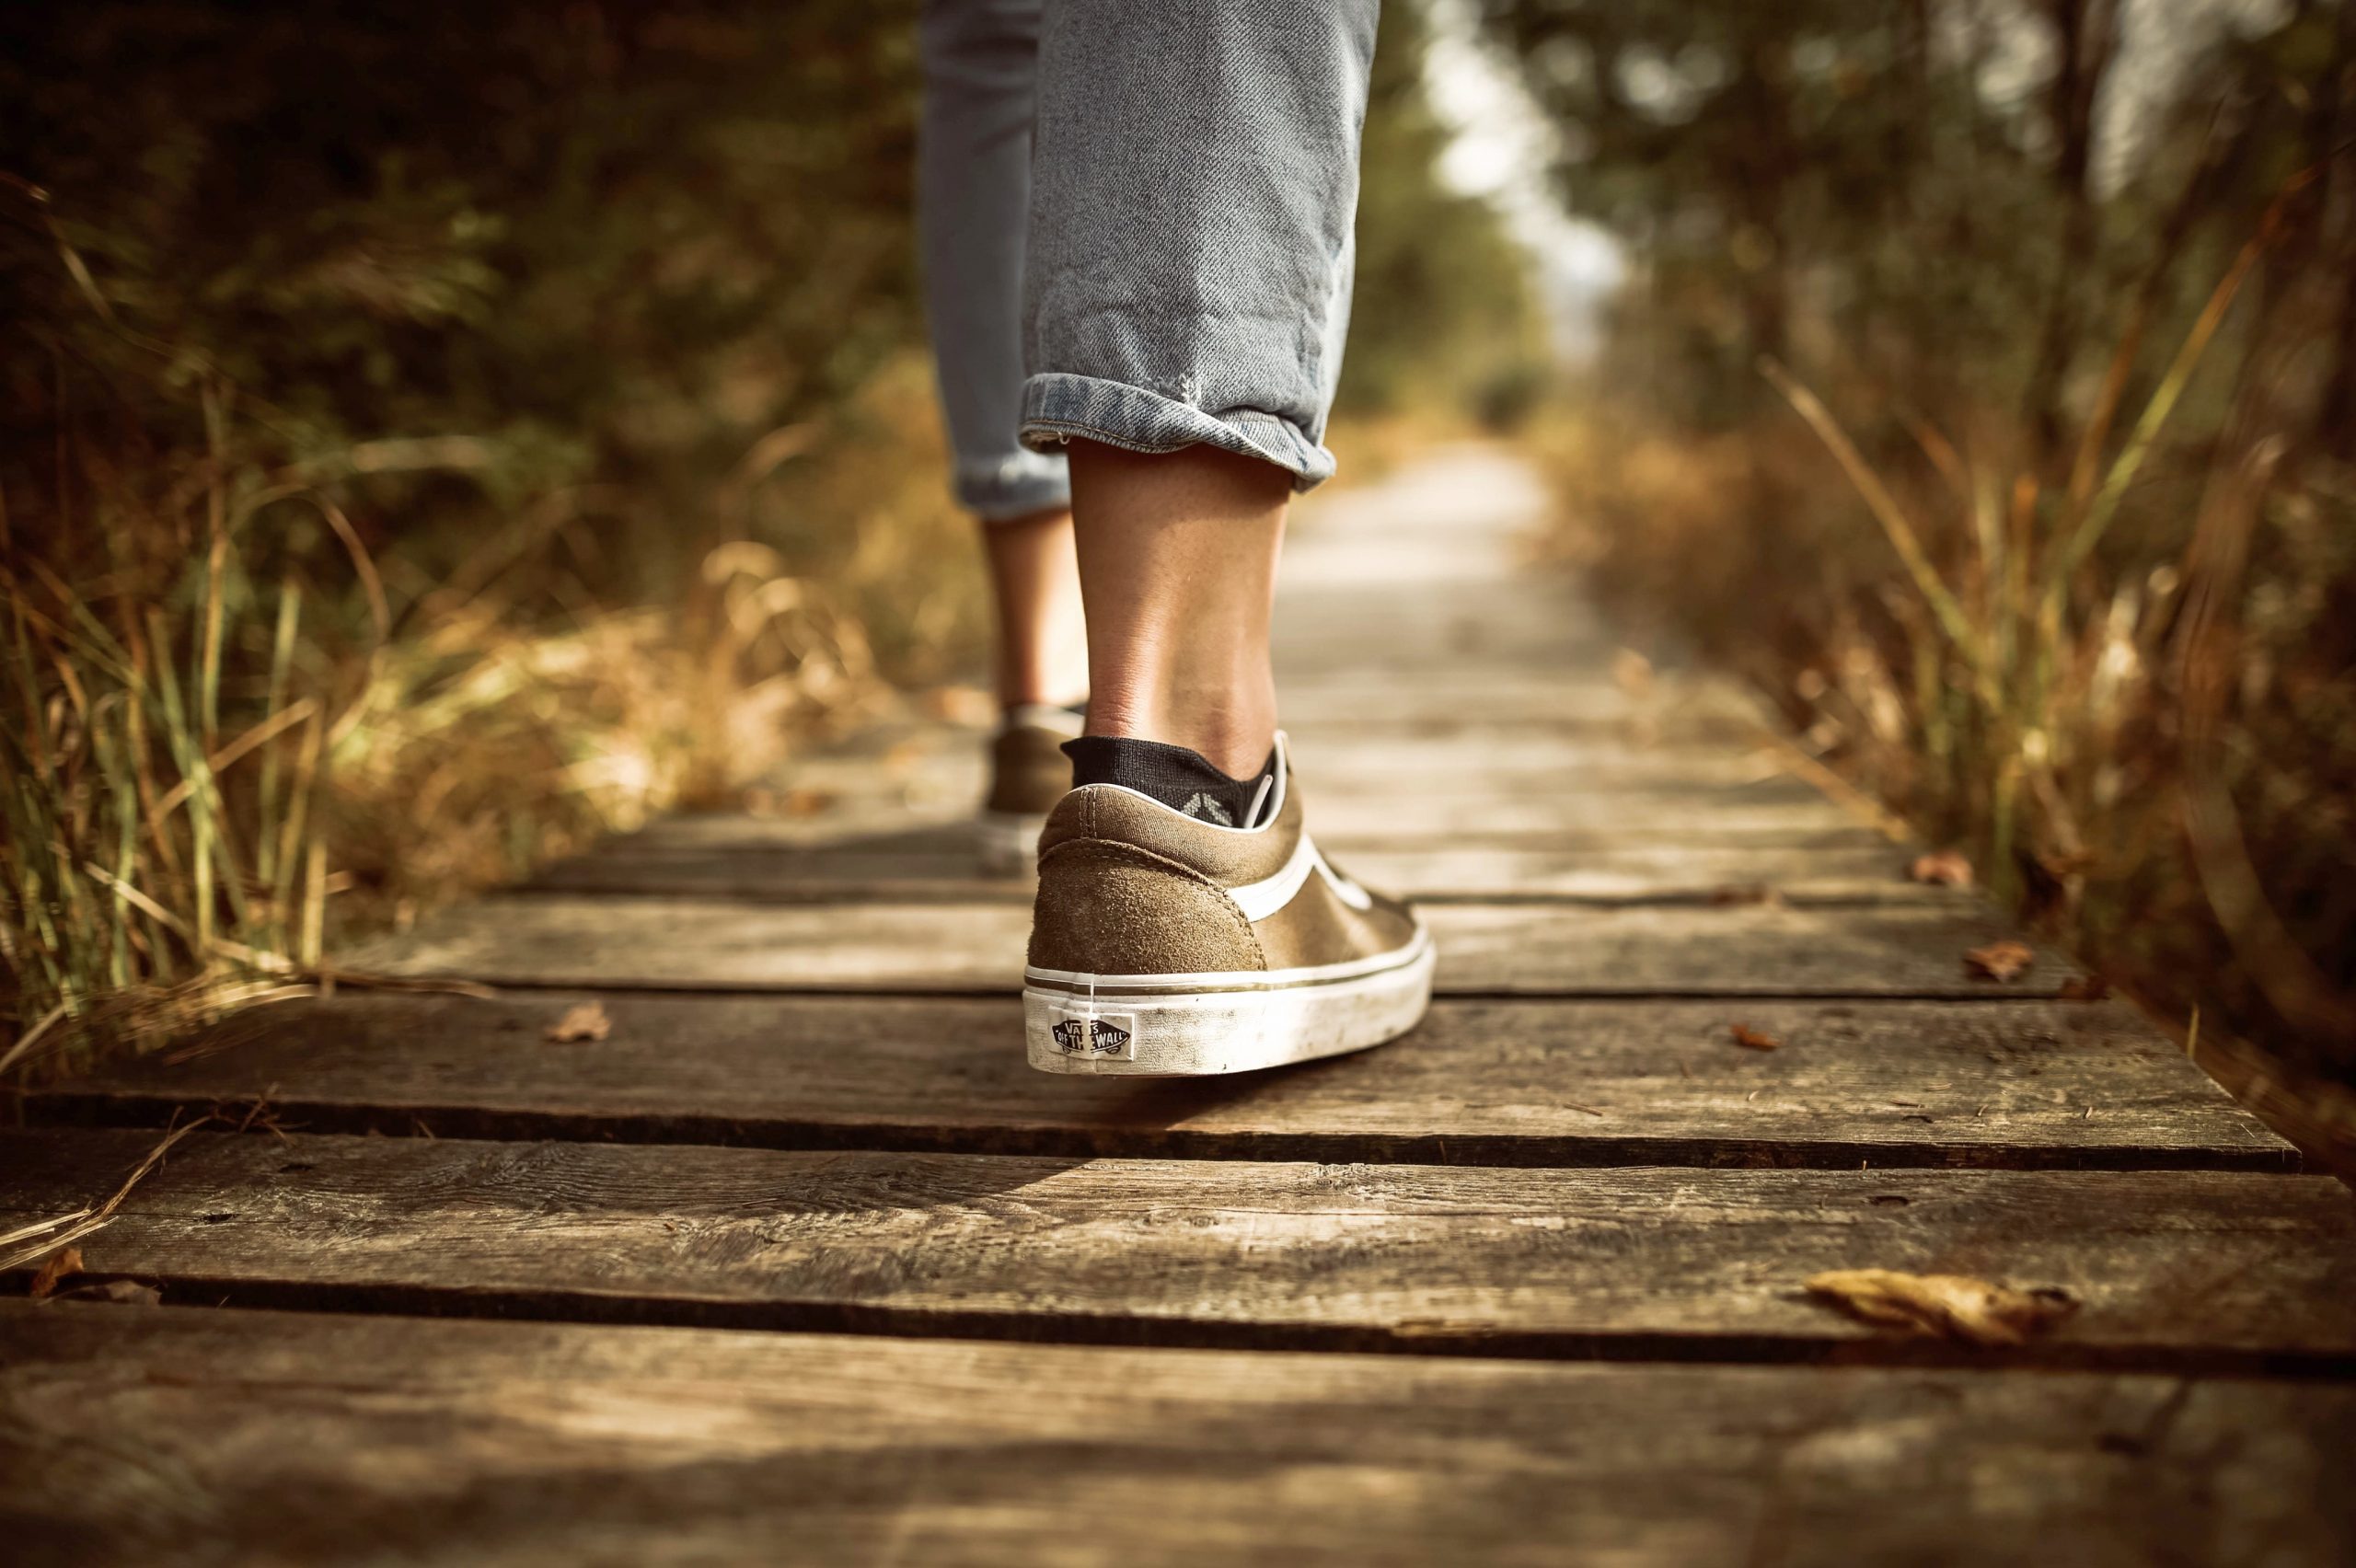 feet walking on wooden path